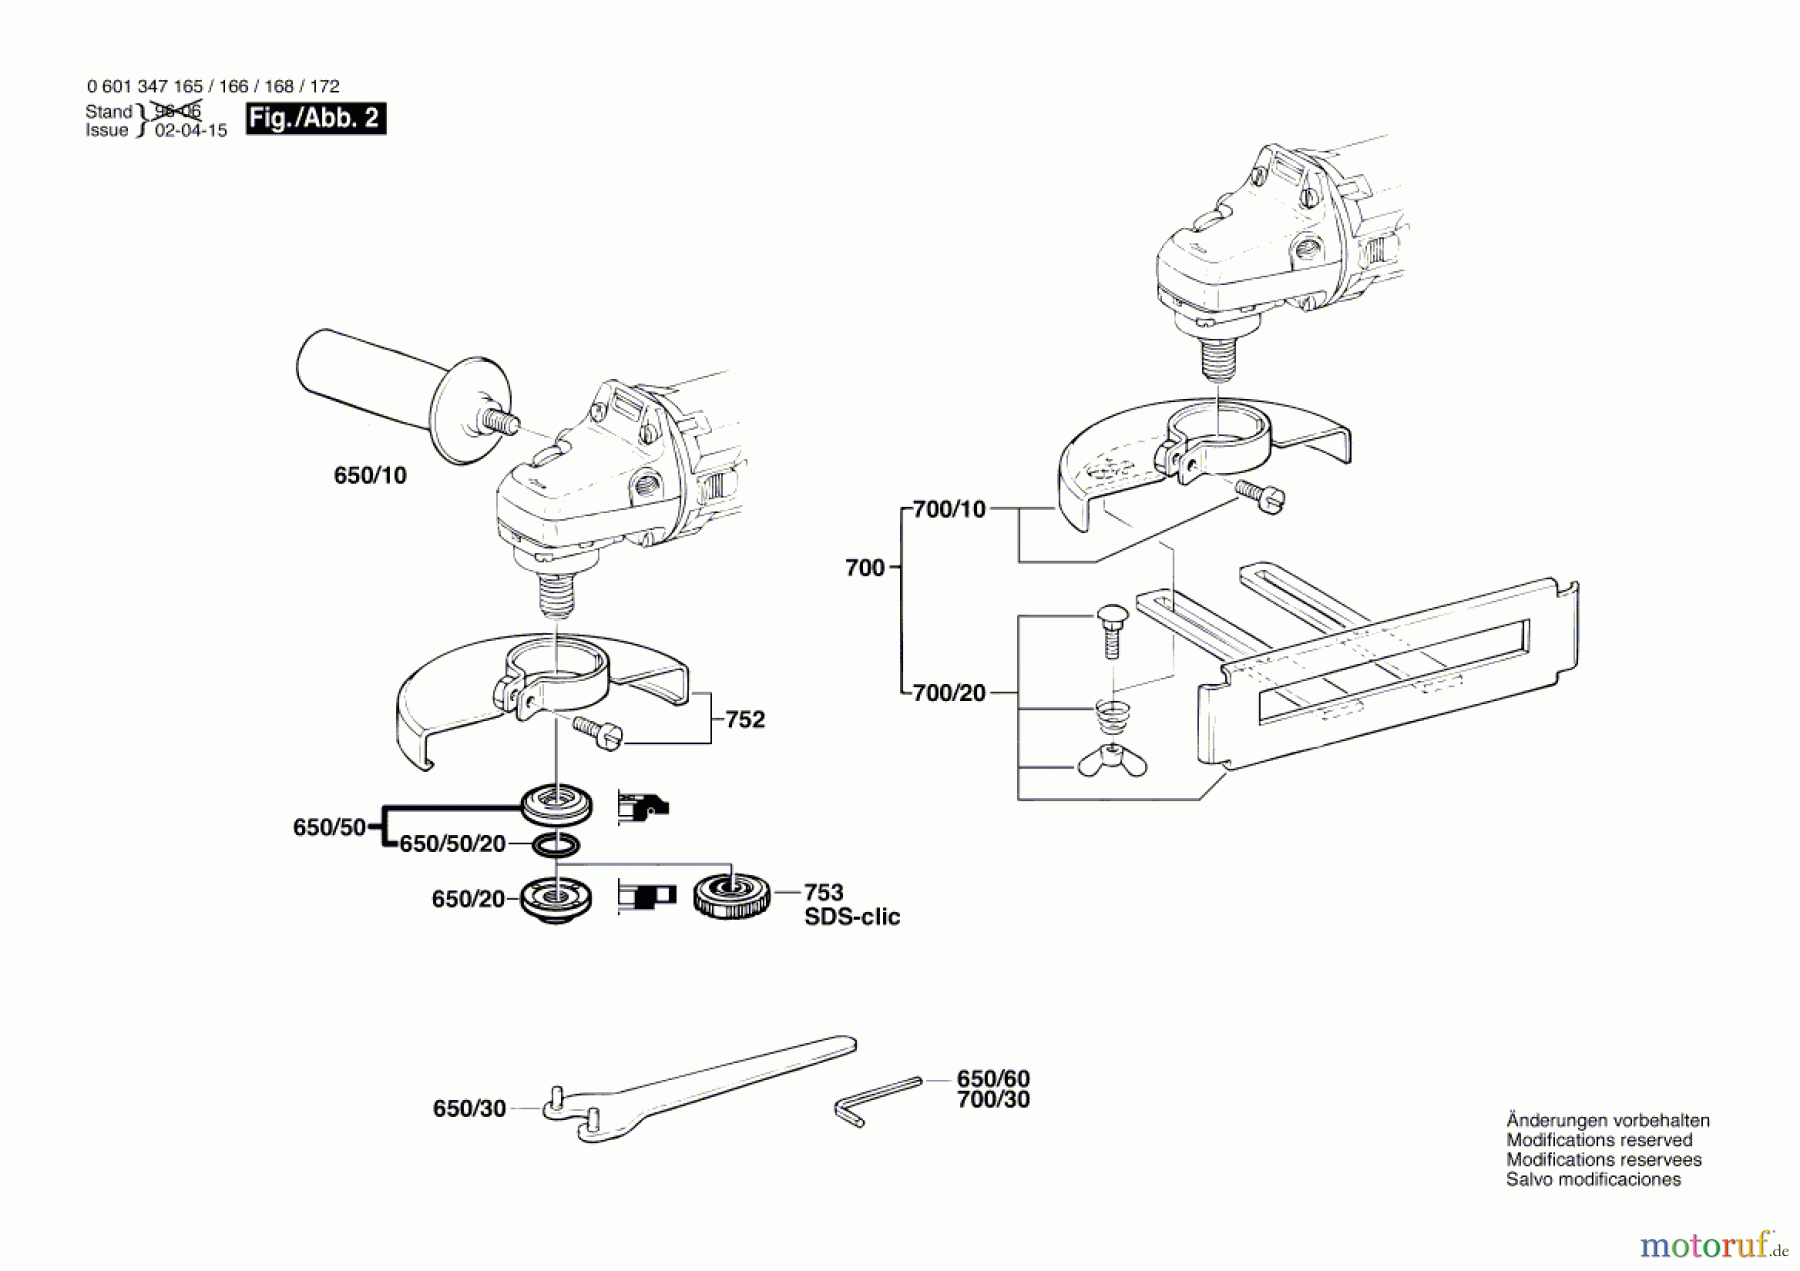  Bosch Werkzeug Winkelschleifer WS 115 S Seite 2